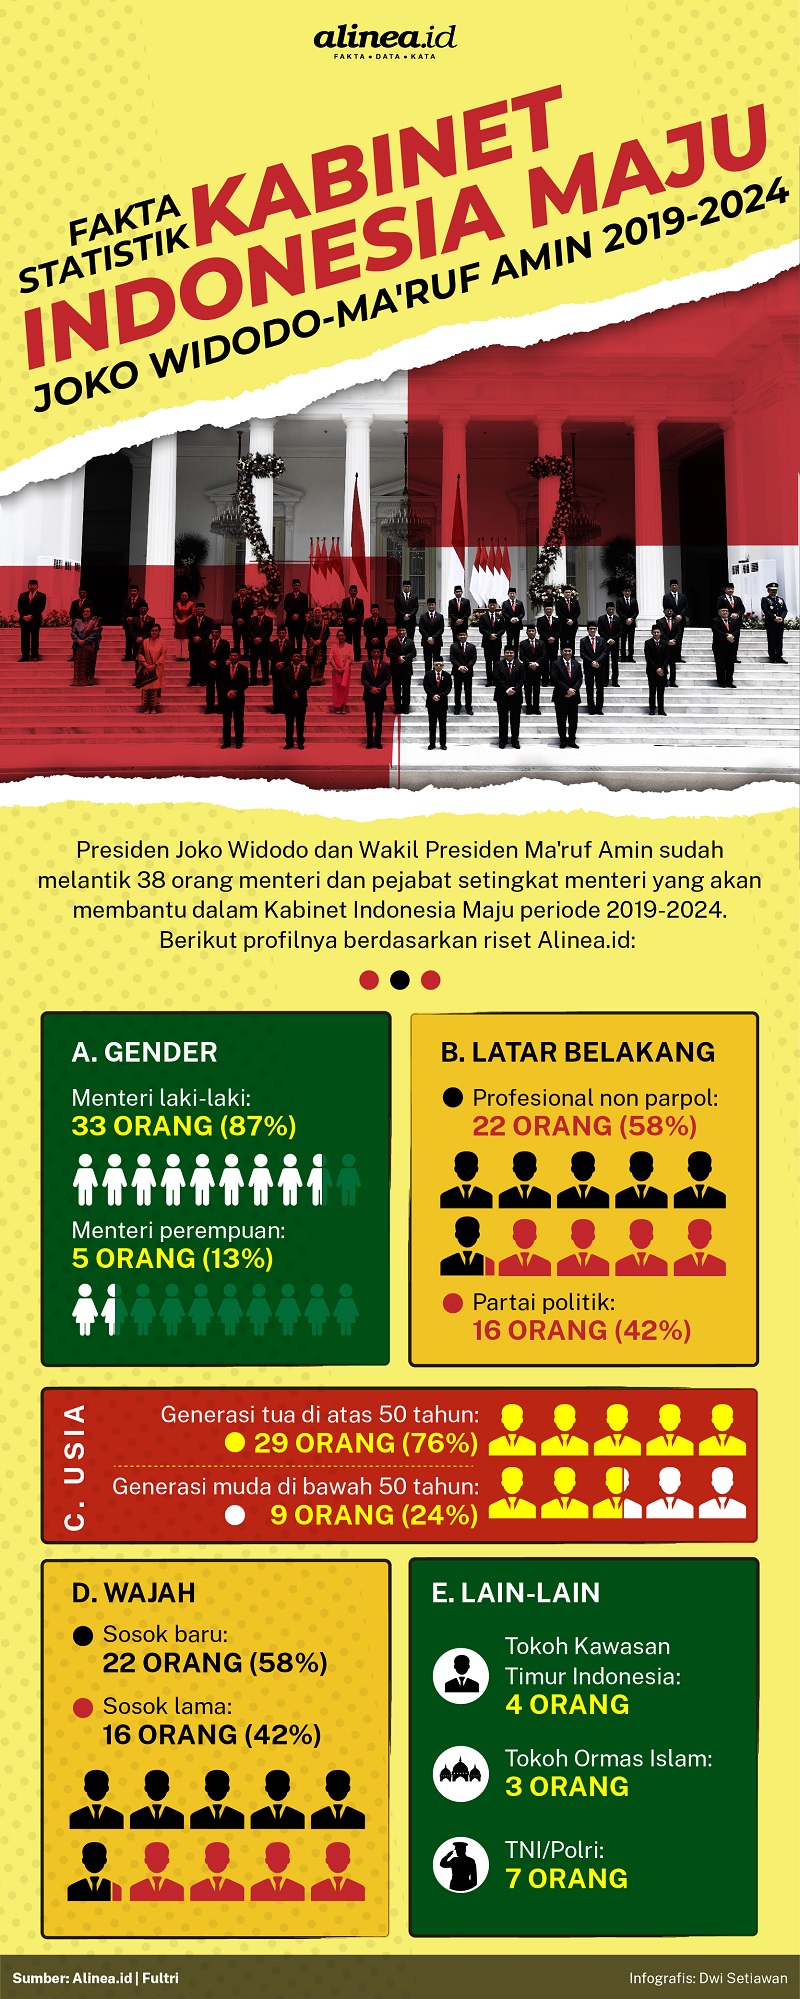 Statistik Kabinet Indonesia Maju periode 2019-2024 era Joko Widodo-Ma'ruf Amin. / Alinea.id